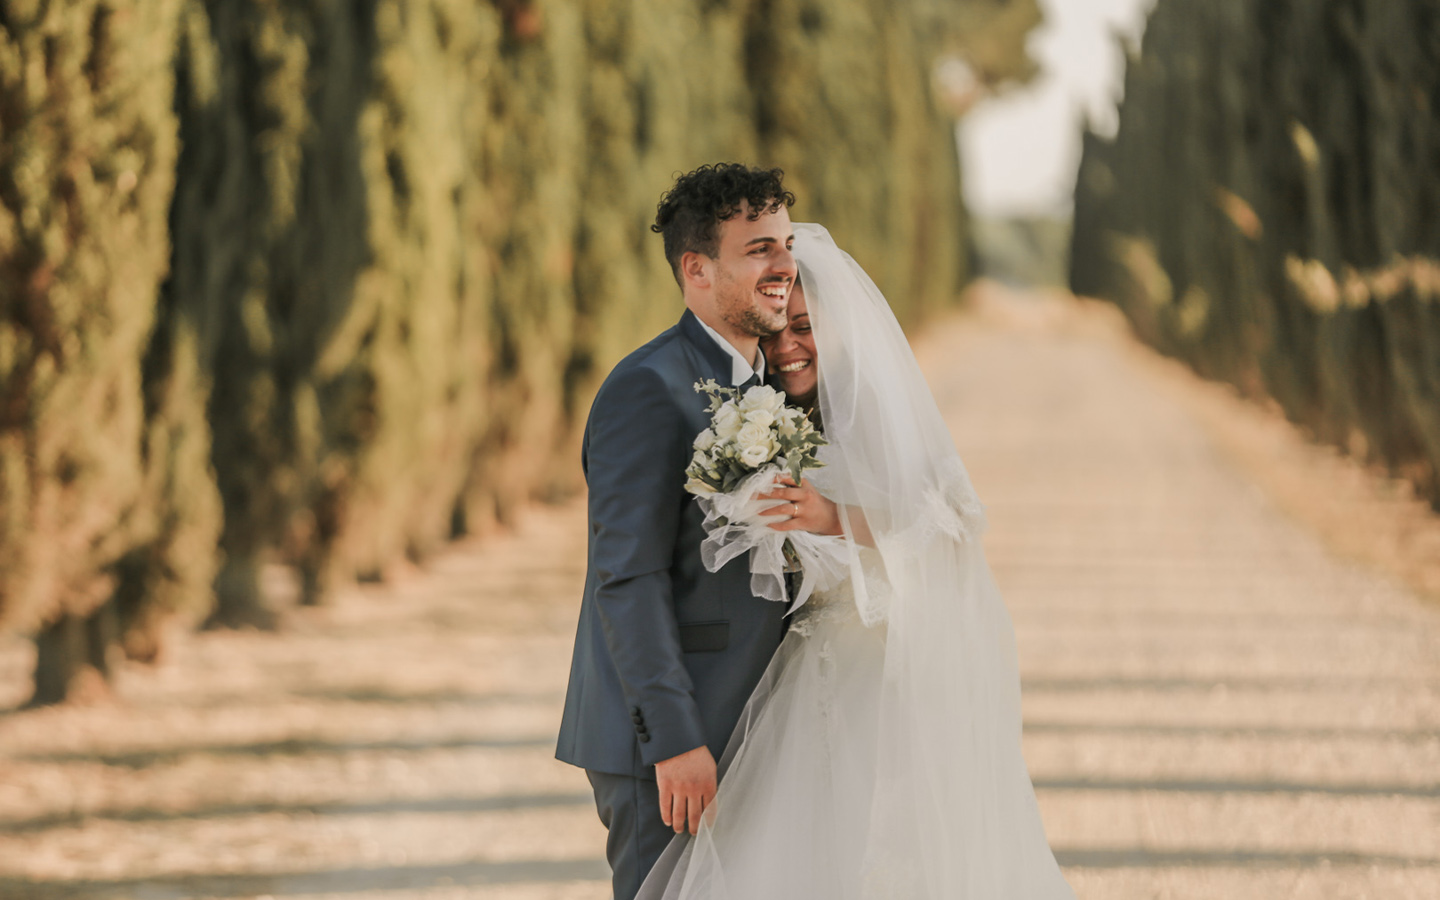 matrimonio di lusso in villa in toscana fotografo di matrimoni sposa e sposo sorrisi